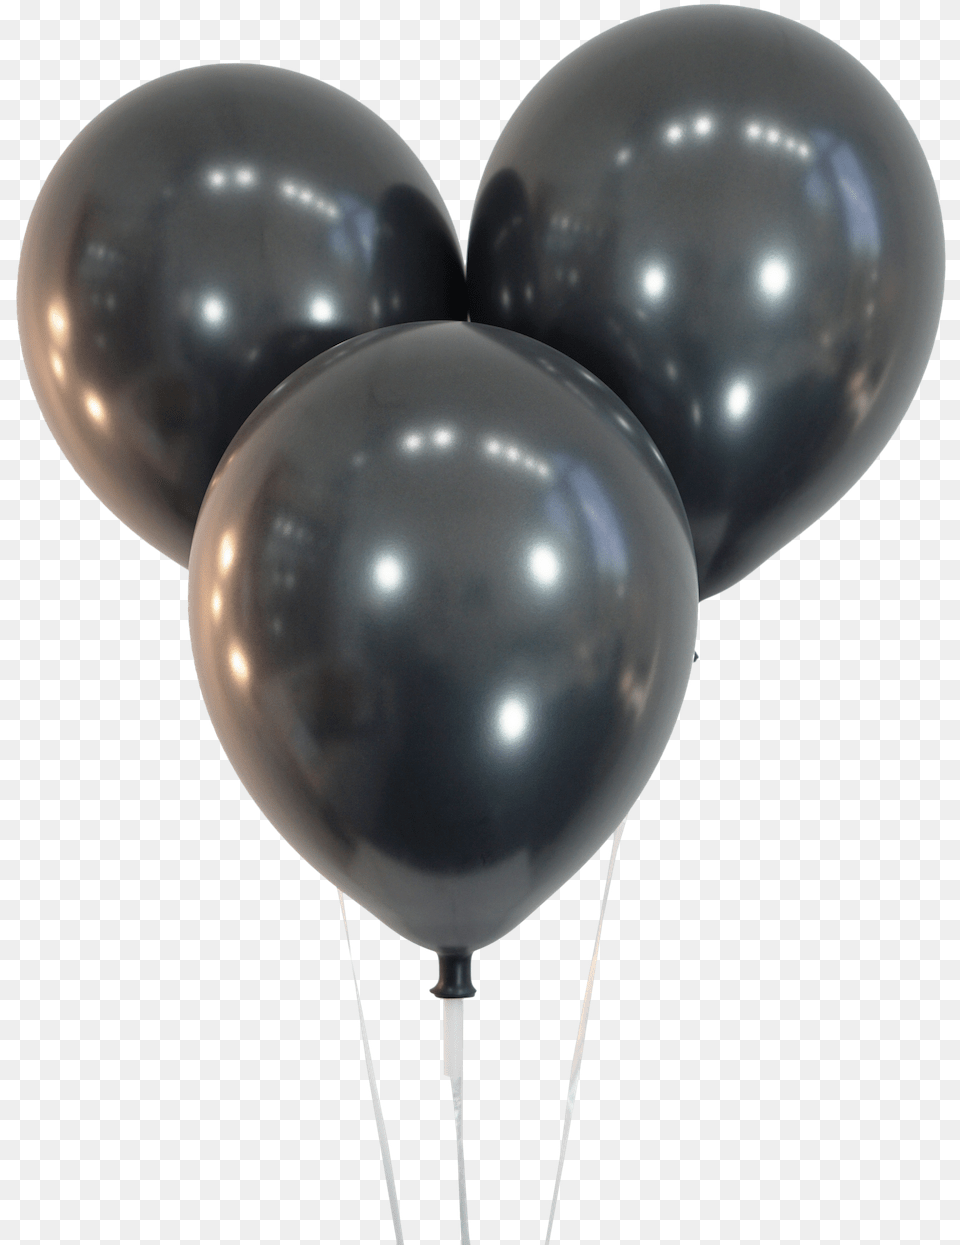 Metallic Black Balloons Black Metallic Balloons, Balloon Free Png